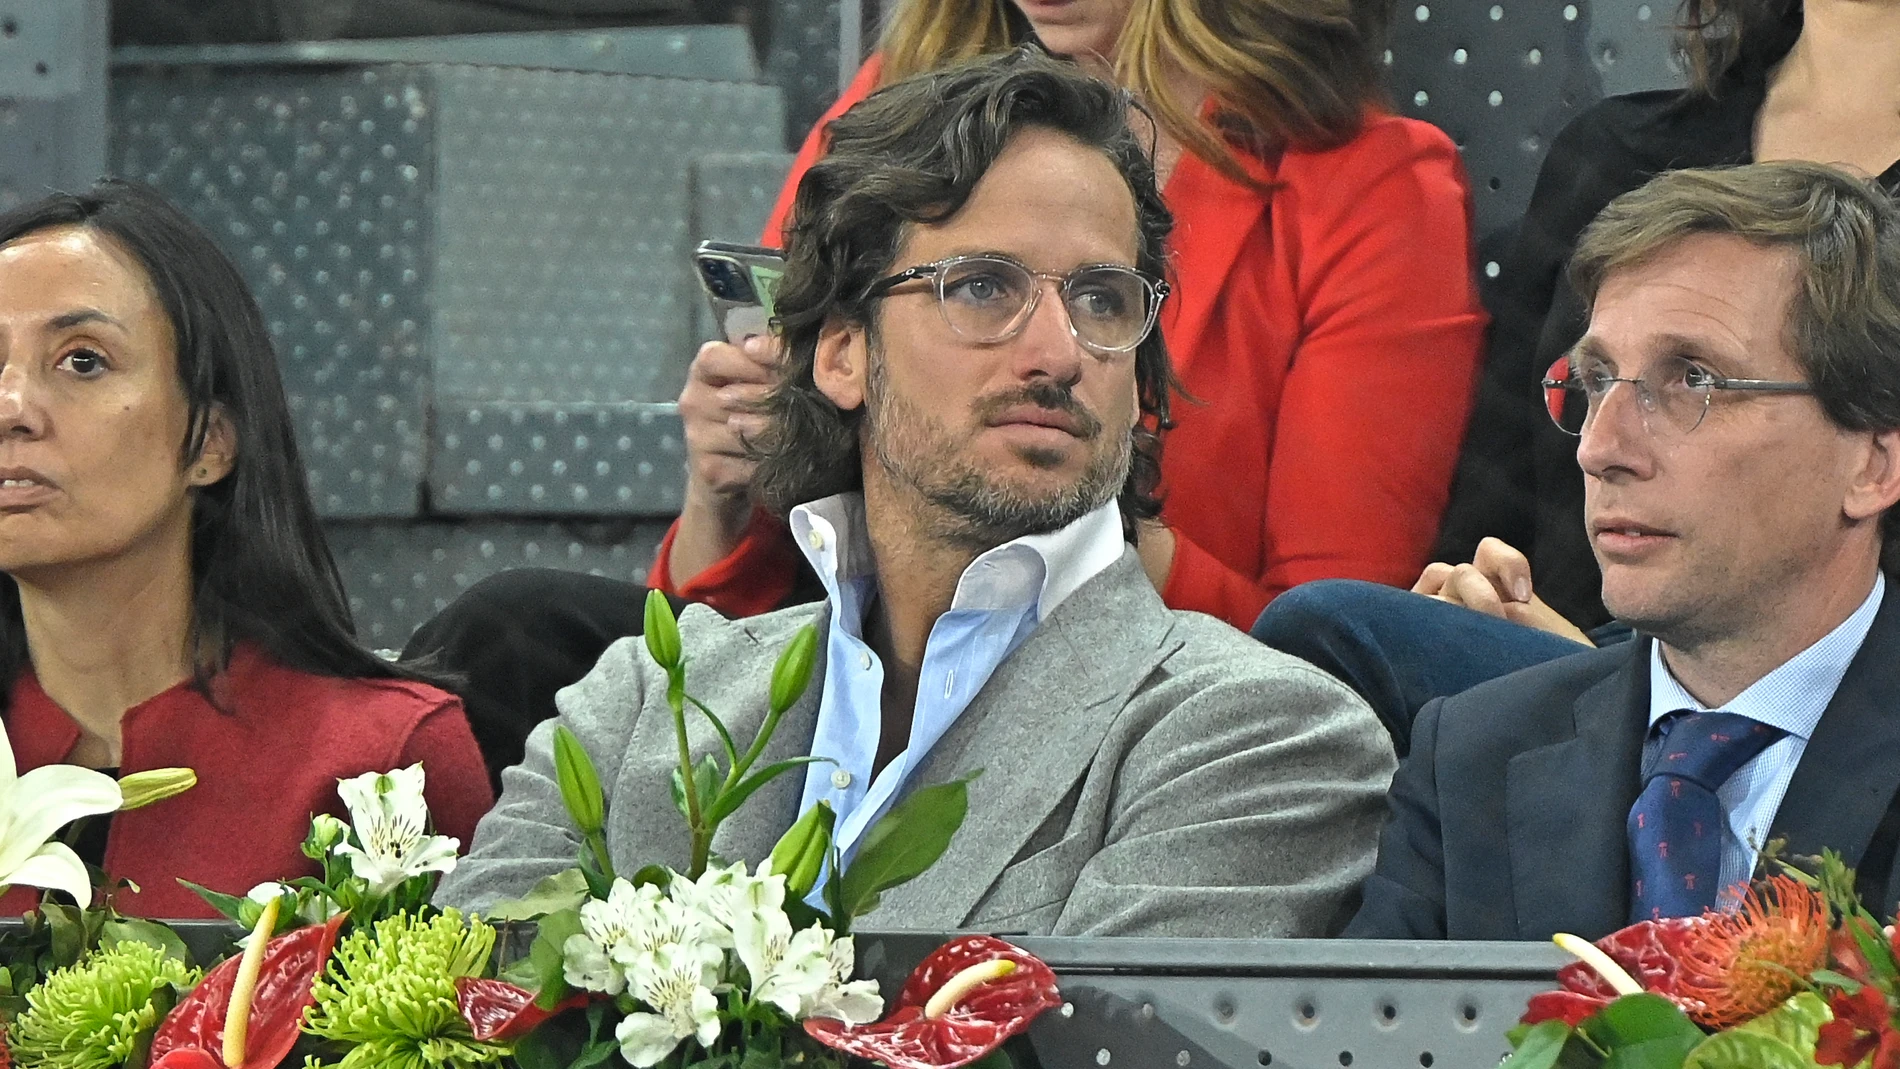 Feliciano López, en uno de los palcos del Mutua Madrid Open junto al alcalde de Madrid, Martínez-Almeida, reconocido seguidor del Atlético